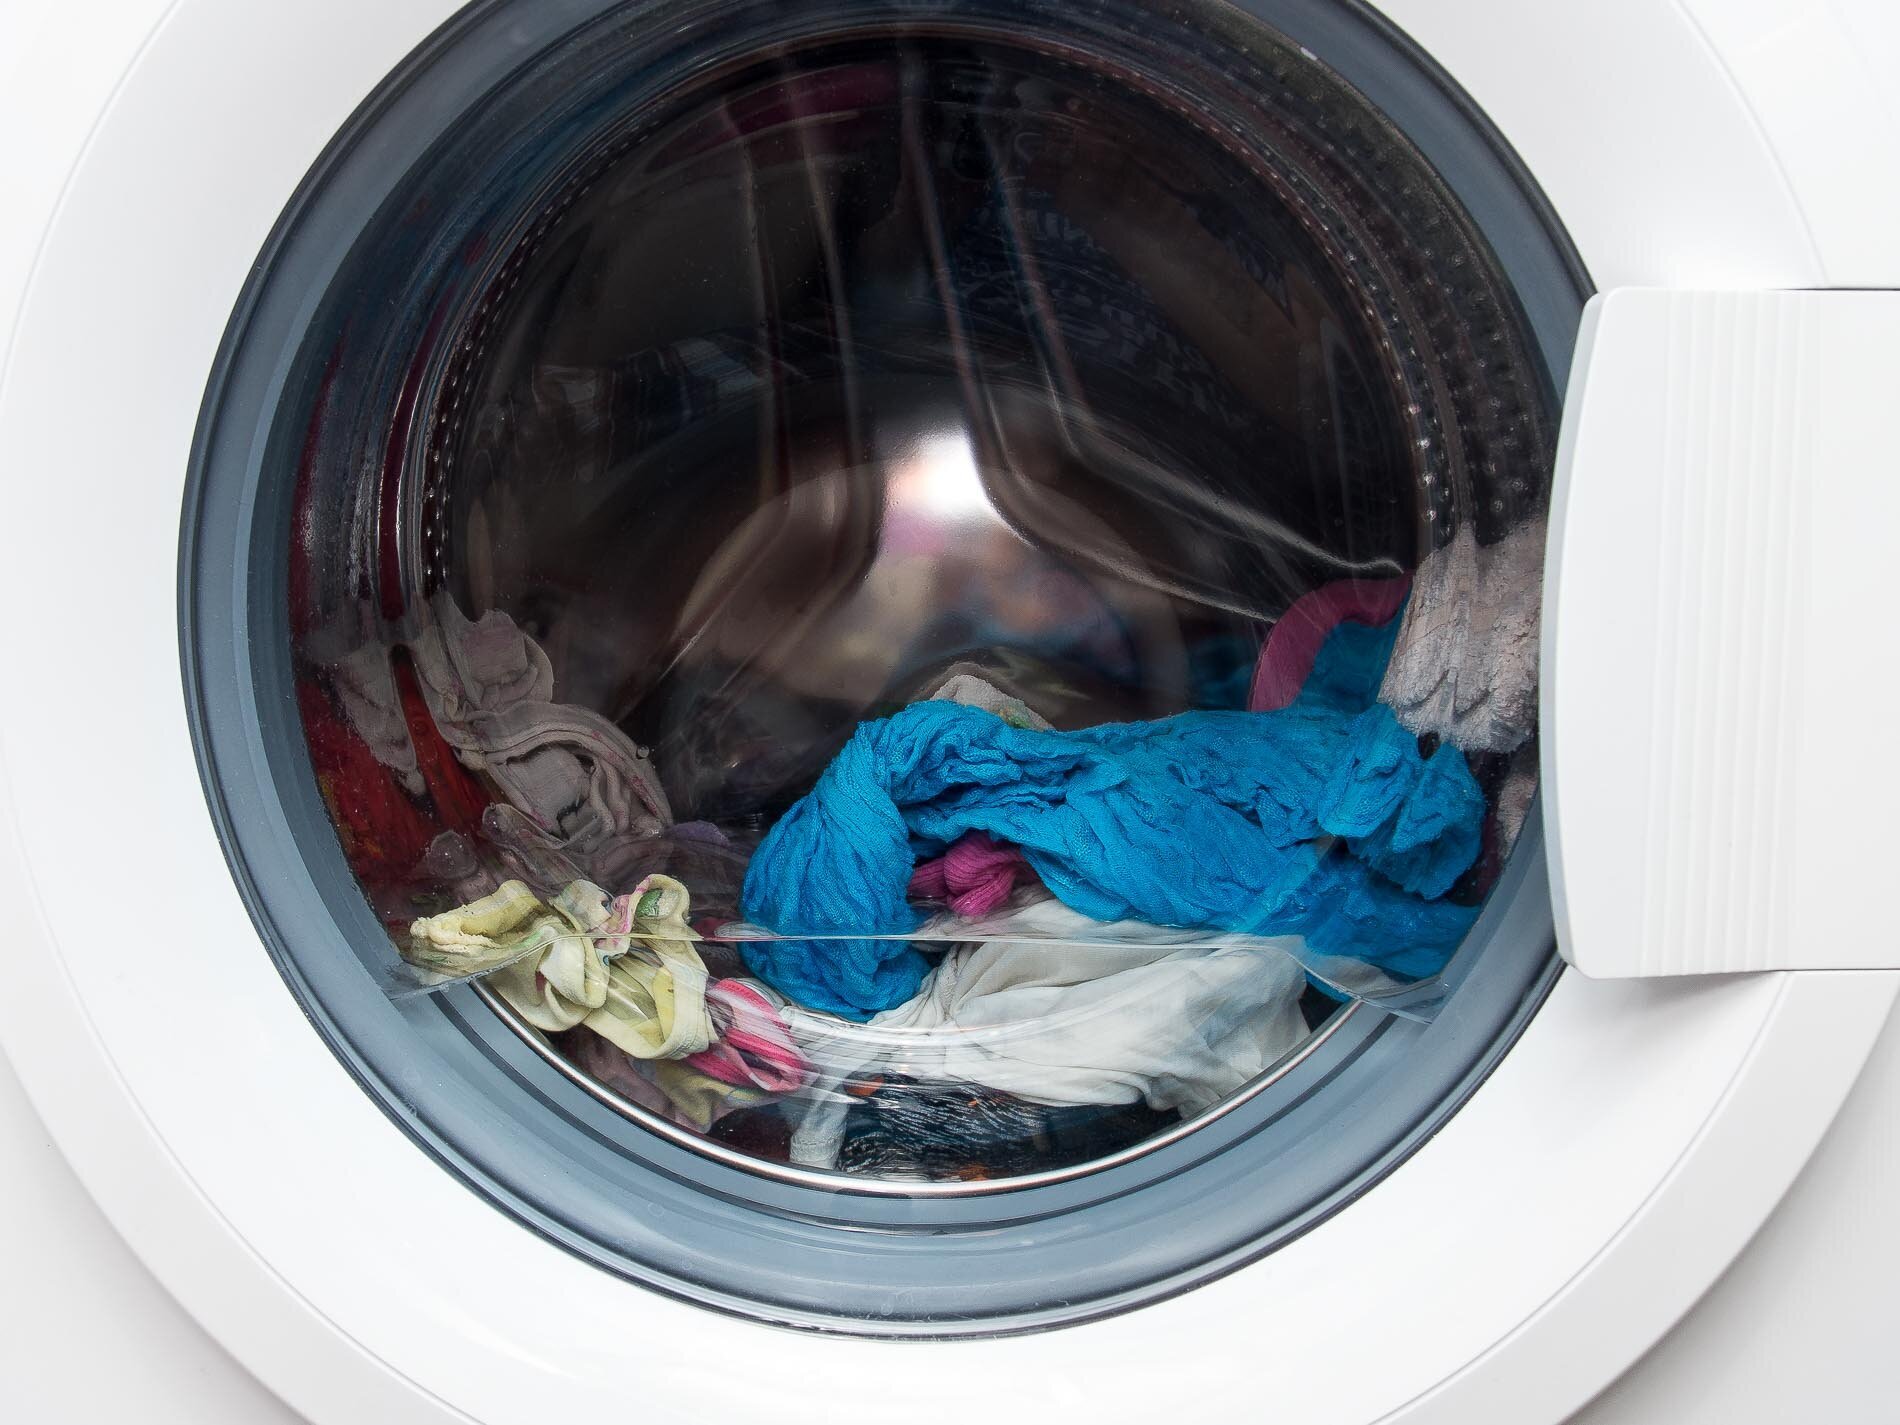 Причины почему не отжимает стиральная машина